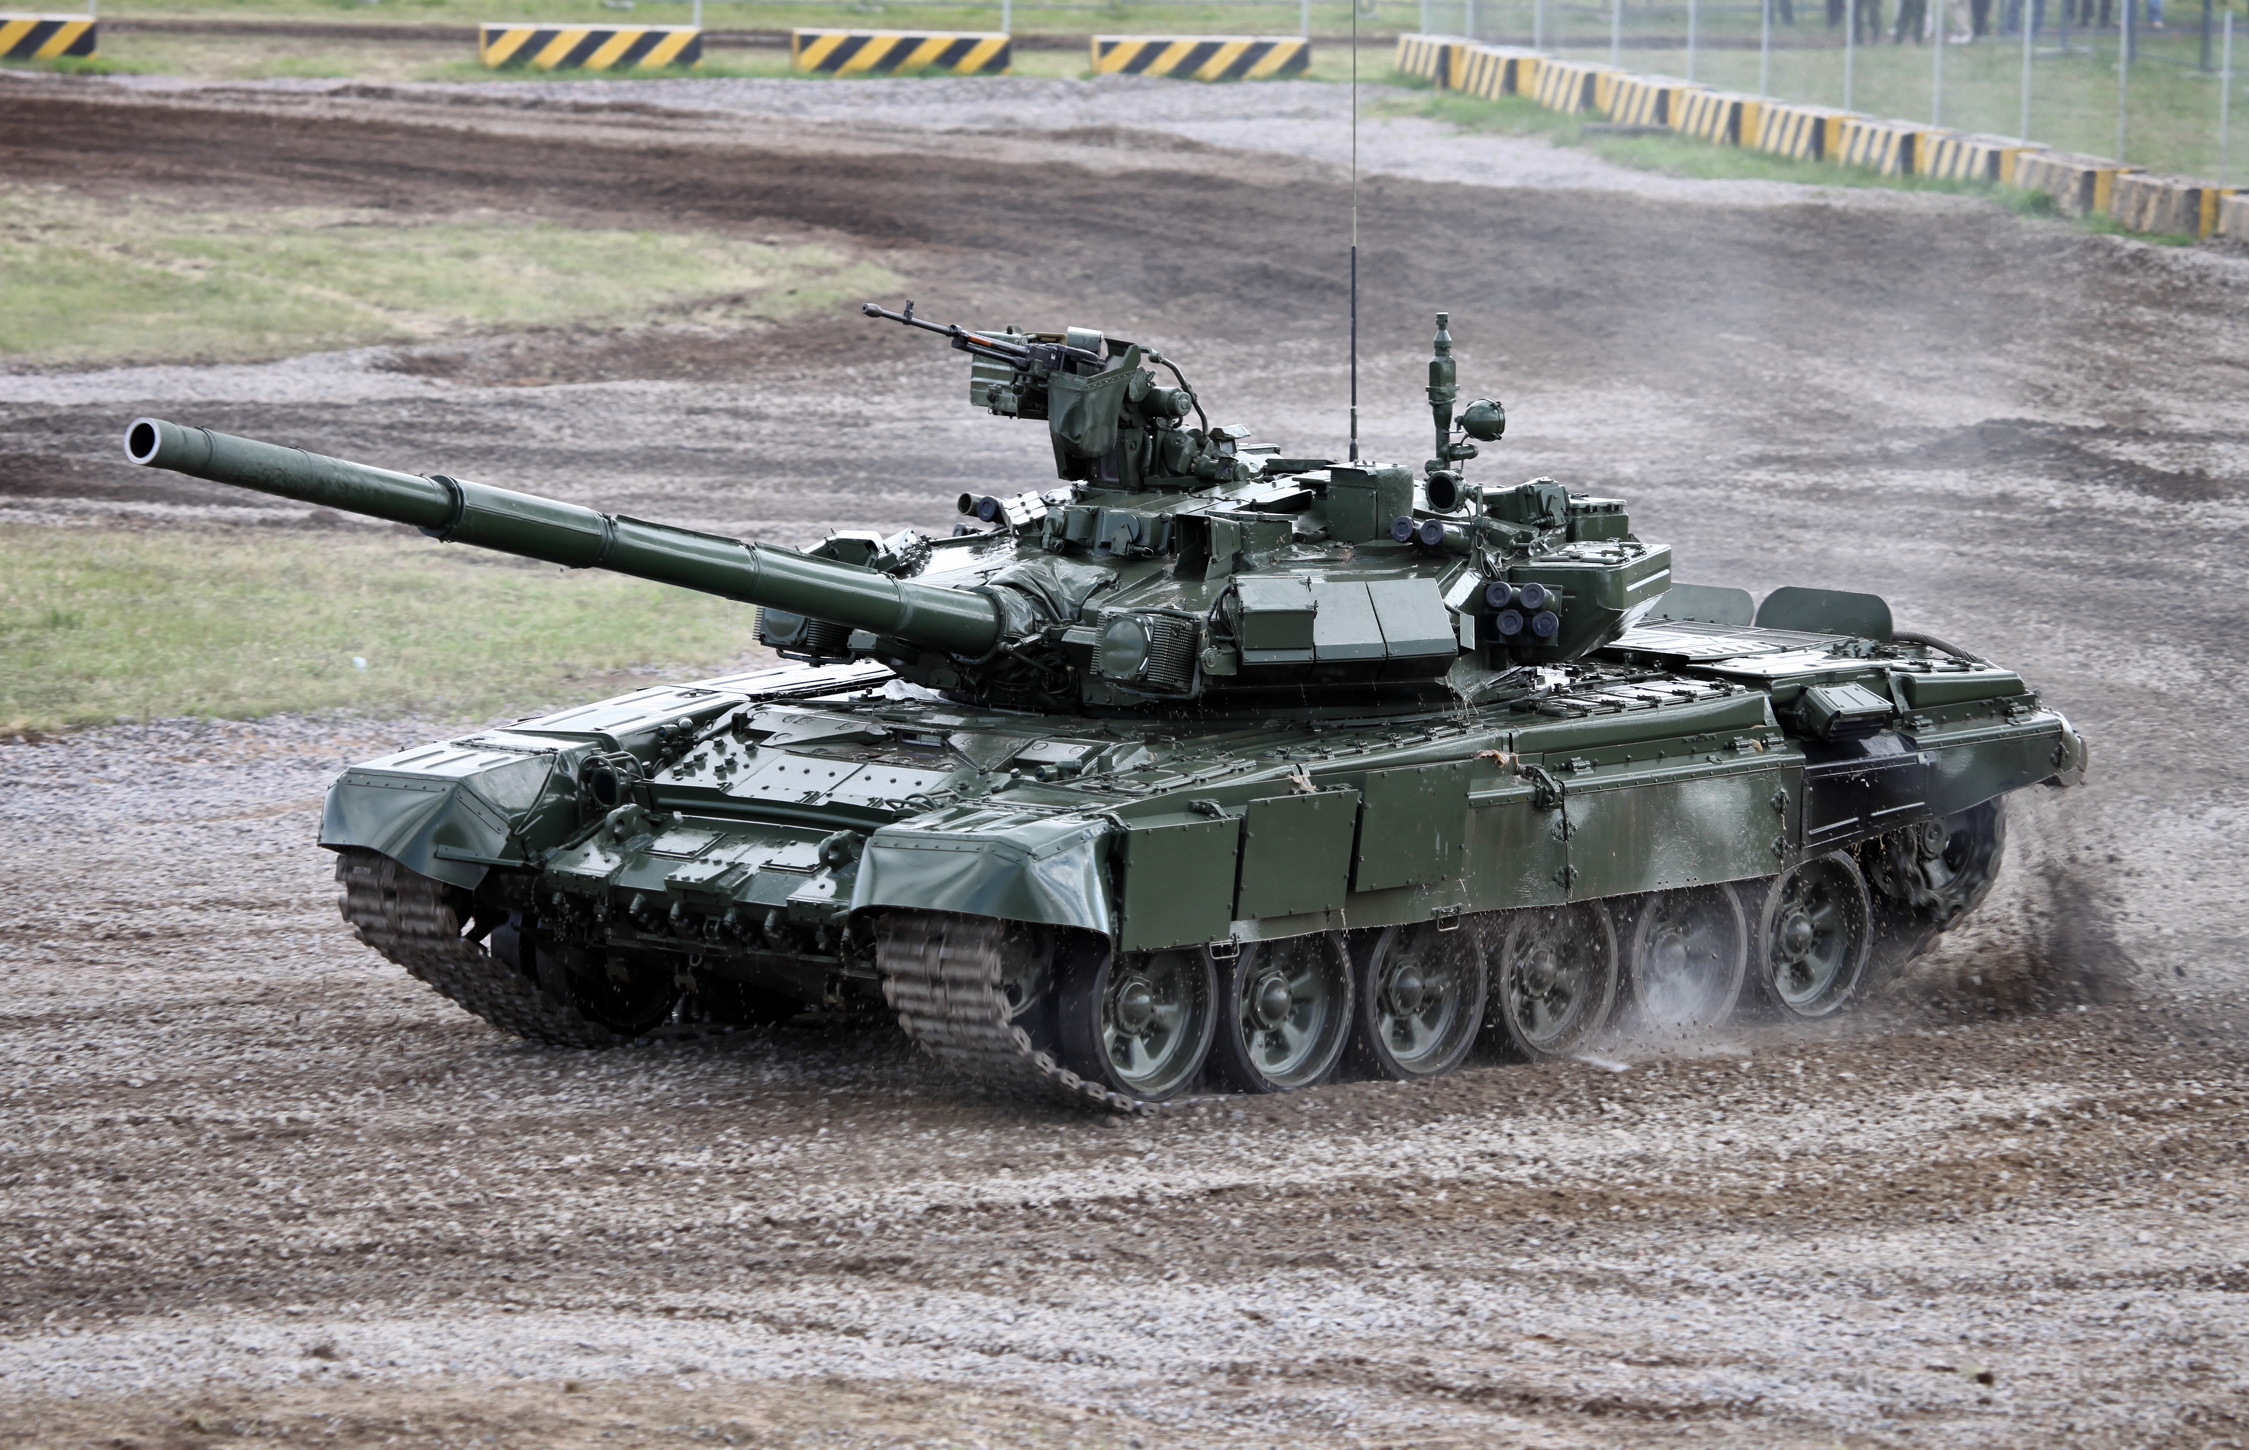 Hãy cùng khám phá những bức hình về T-90 - một trong những chiến xe tăng hiện đại nhất thế giới. Điều đó sẽ giúp bạn hiểu hơn về khả năng và tính năng của một trong những hệ thống vũ khí quân sự đáng kinh ngạc.